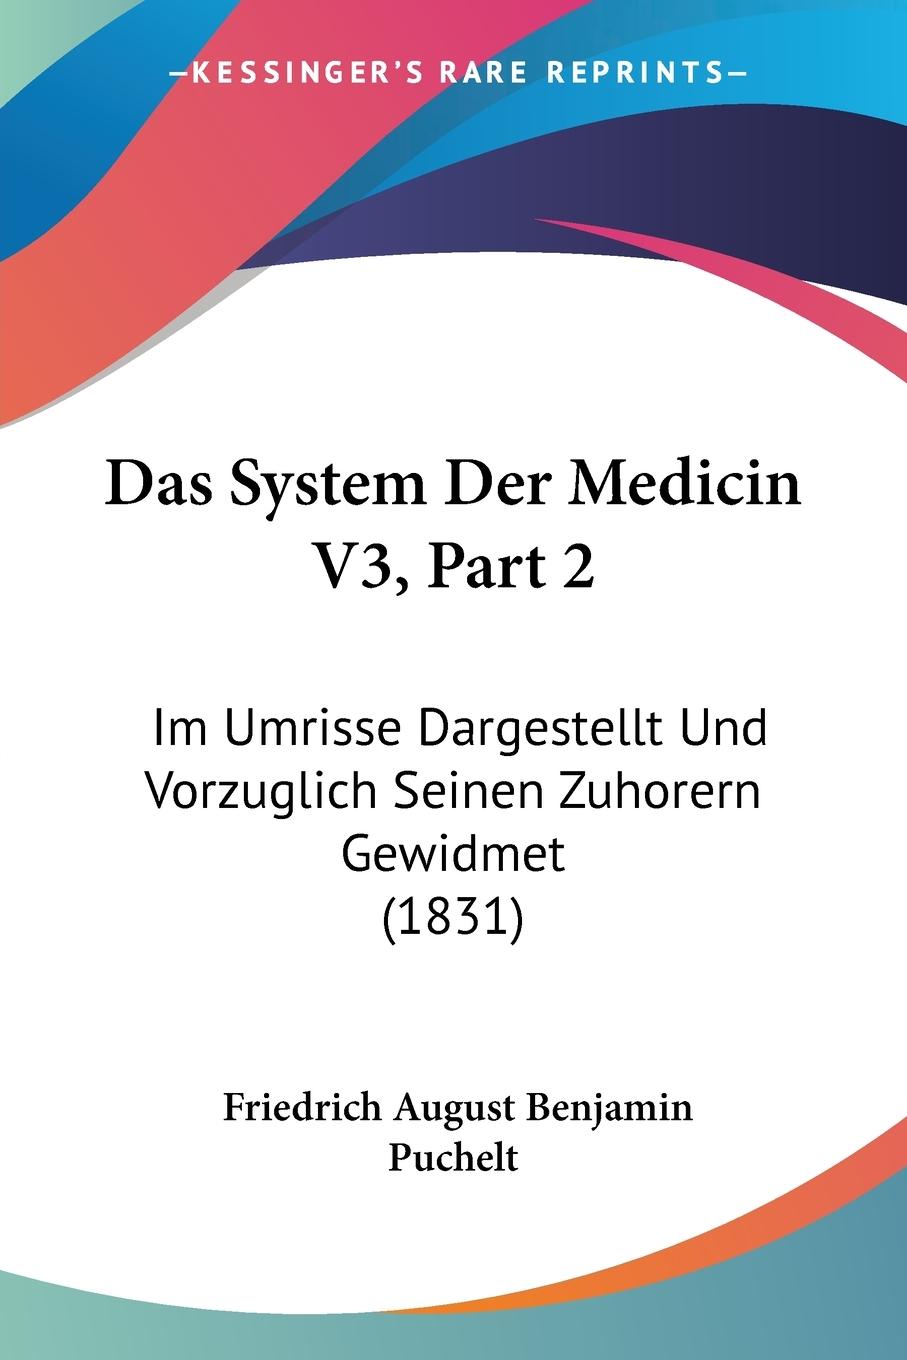 Das System Der Medicin V3, Part 2 - Puchelt, Friedrich August Benjamin